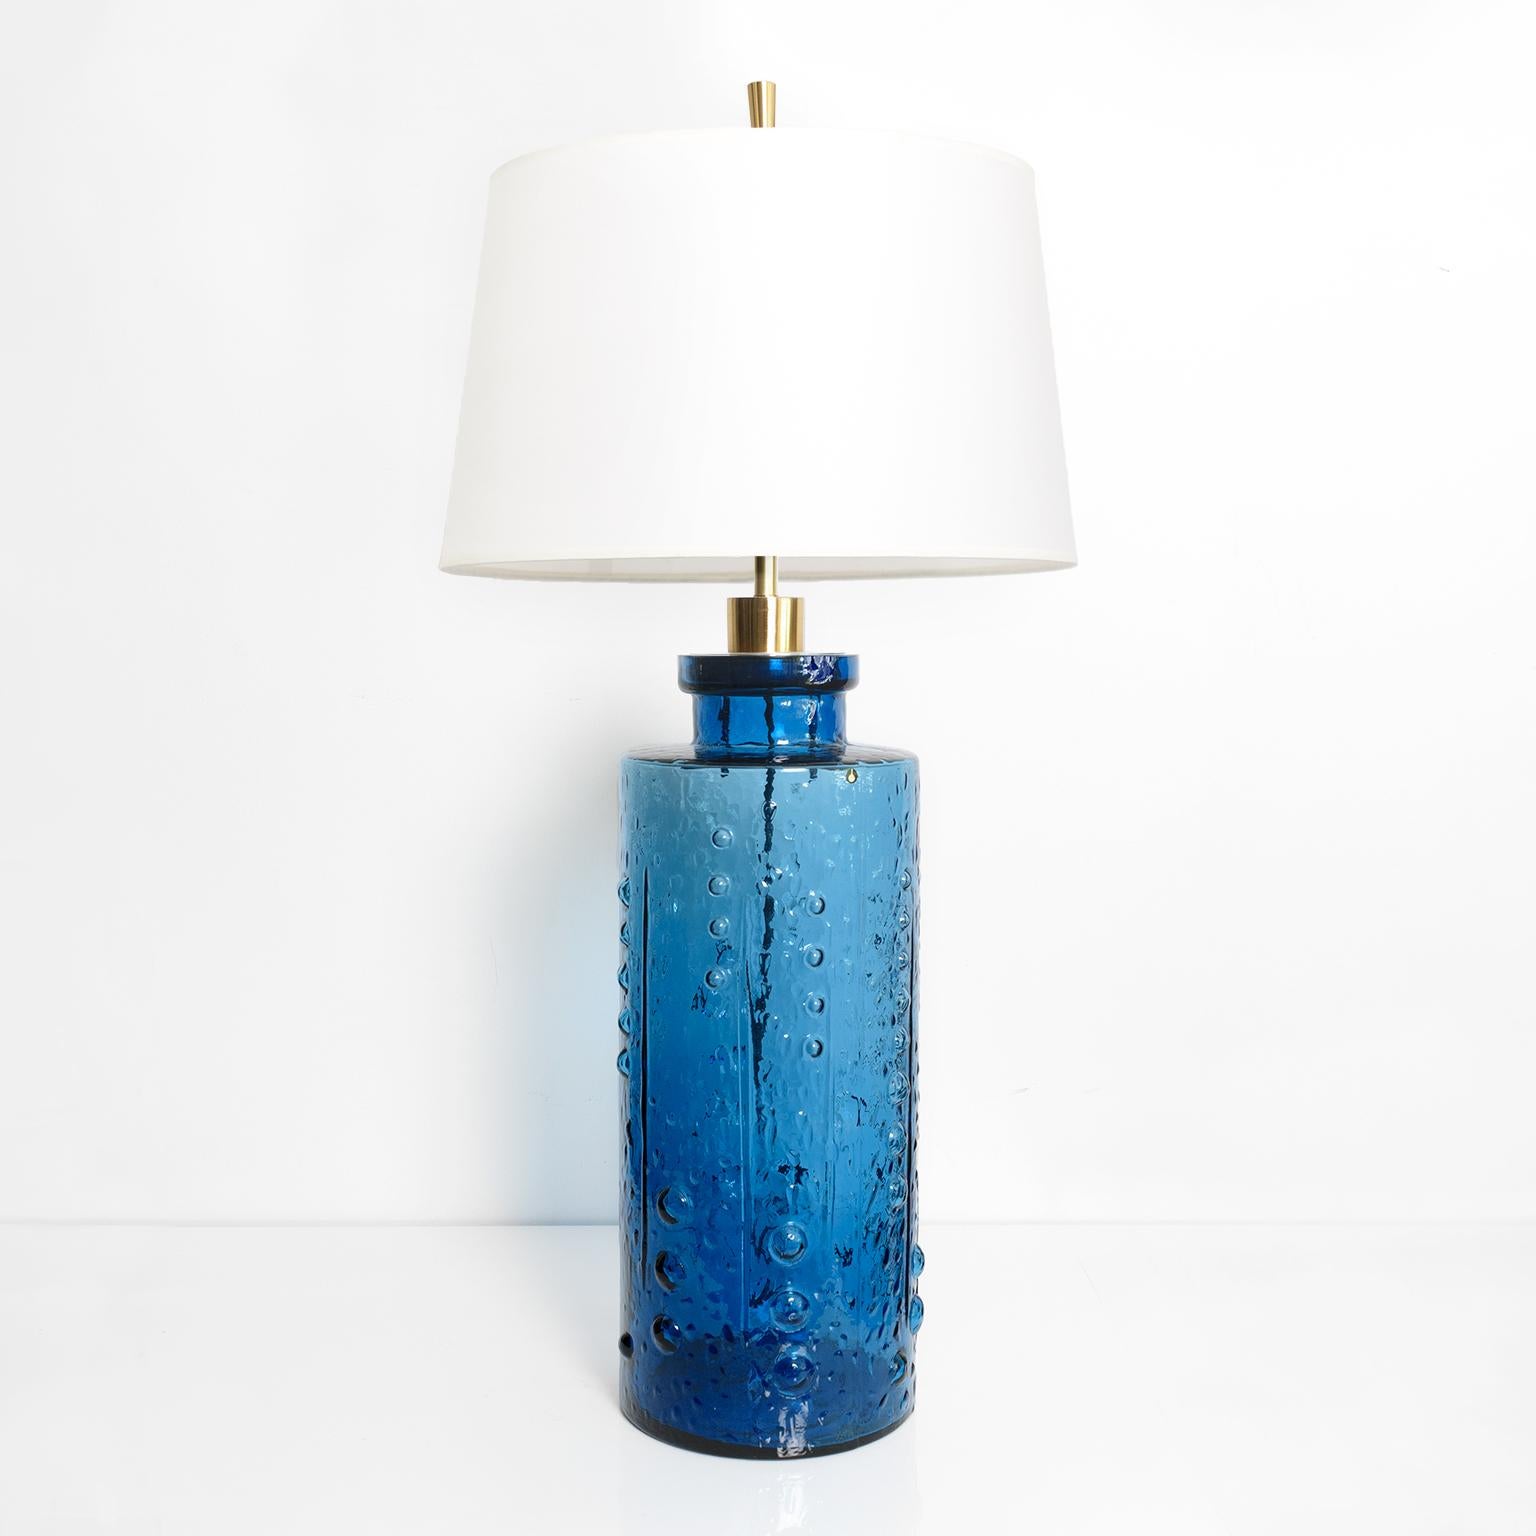 Une grande lampe en verre bleu foncé de style scandinave moderne par Pukeberg Glasbruk, Suède, années 1960. La forme cylindrique présente une surface texturée de points et de lignes verticales. La lampe a été équipée d'une nouvelle quincaillerie